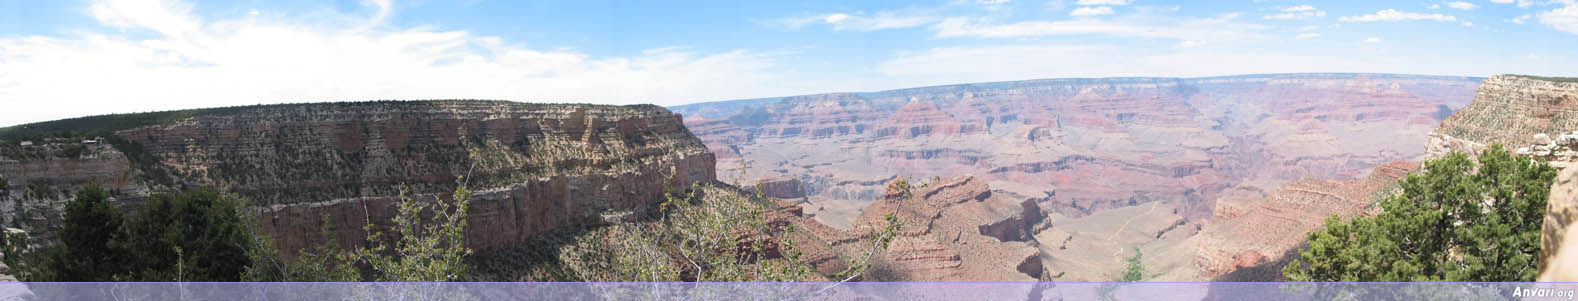 Grand Canyon Panorama - Grand Canyon Panorama 